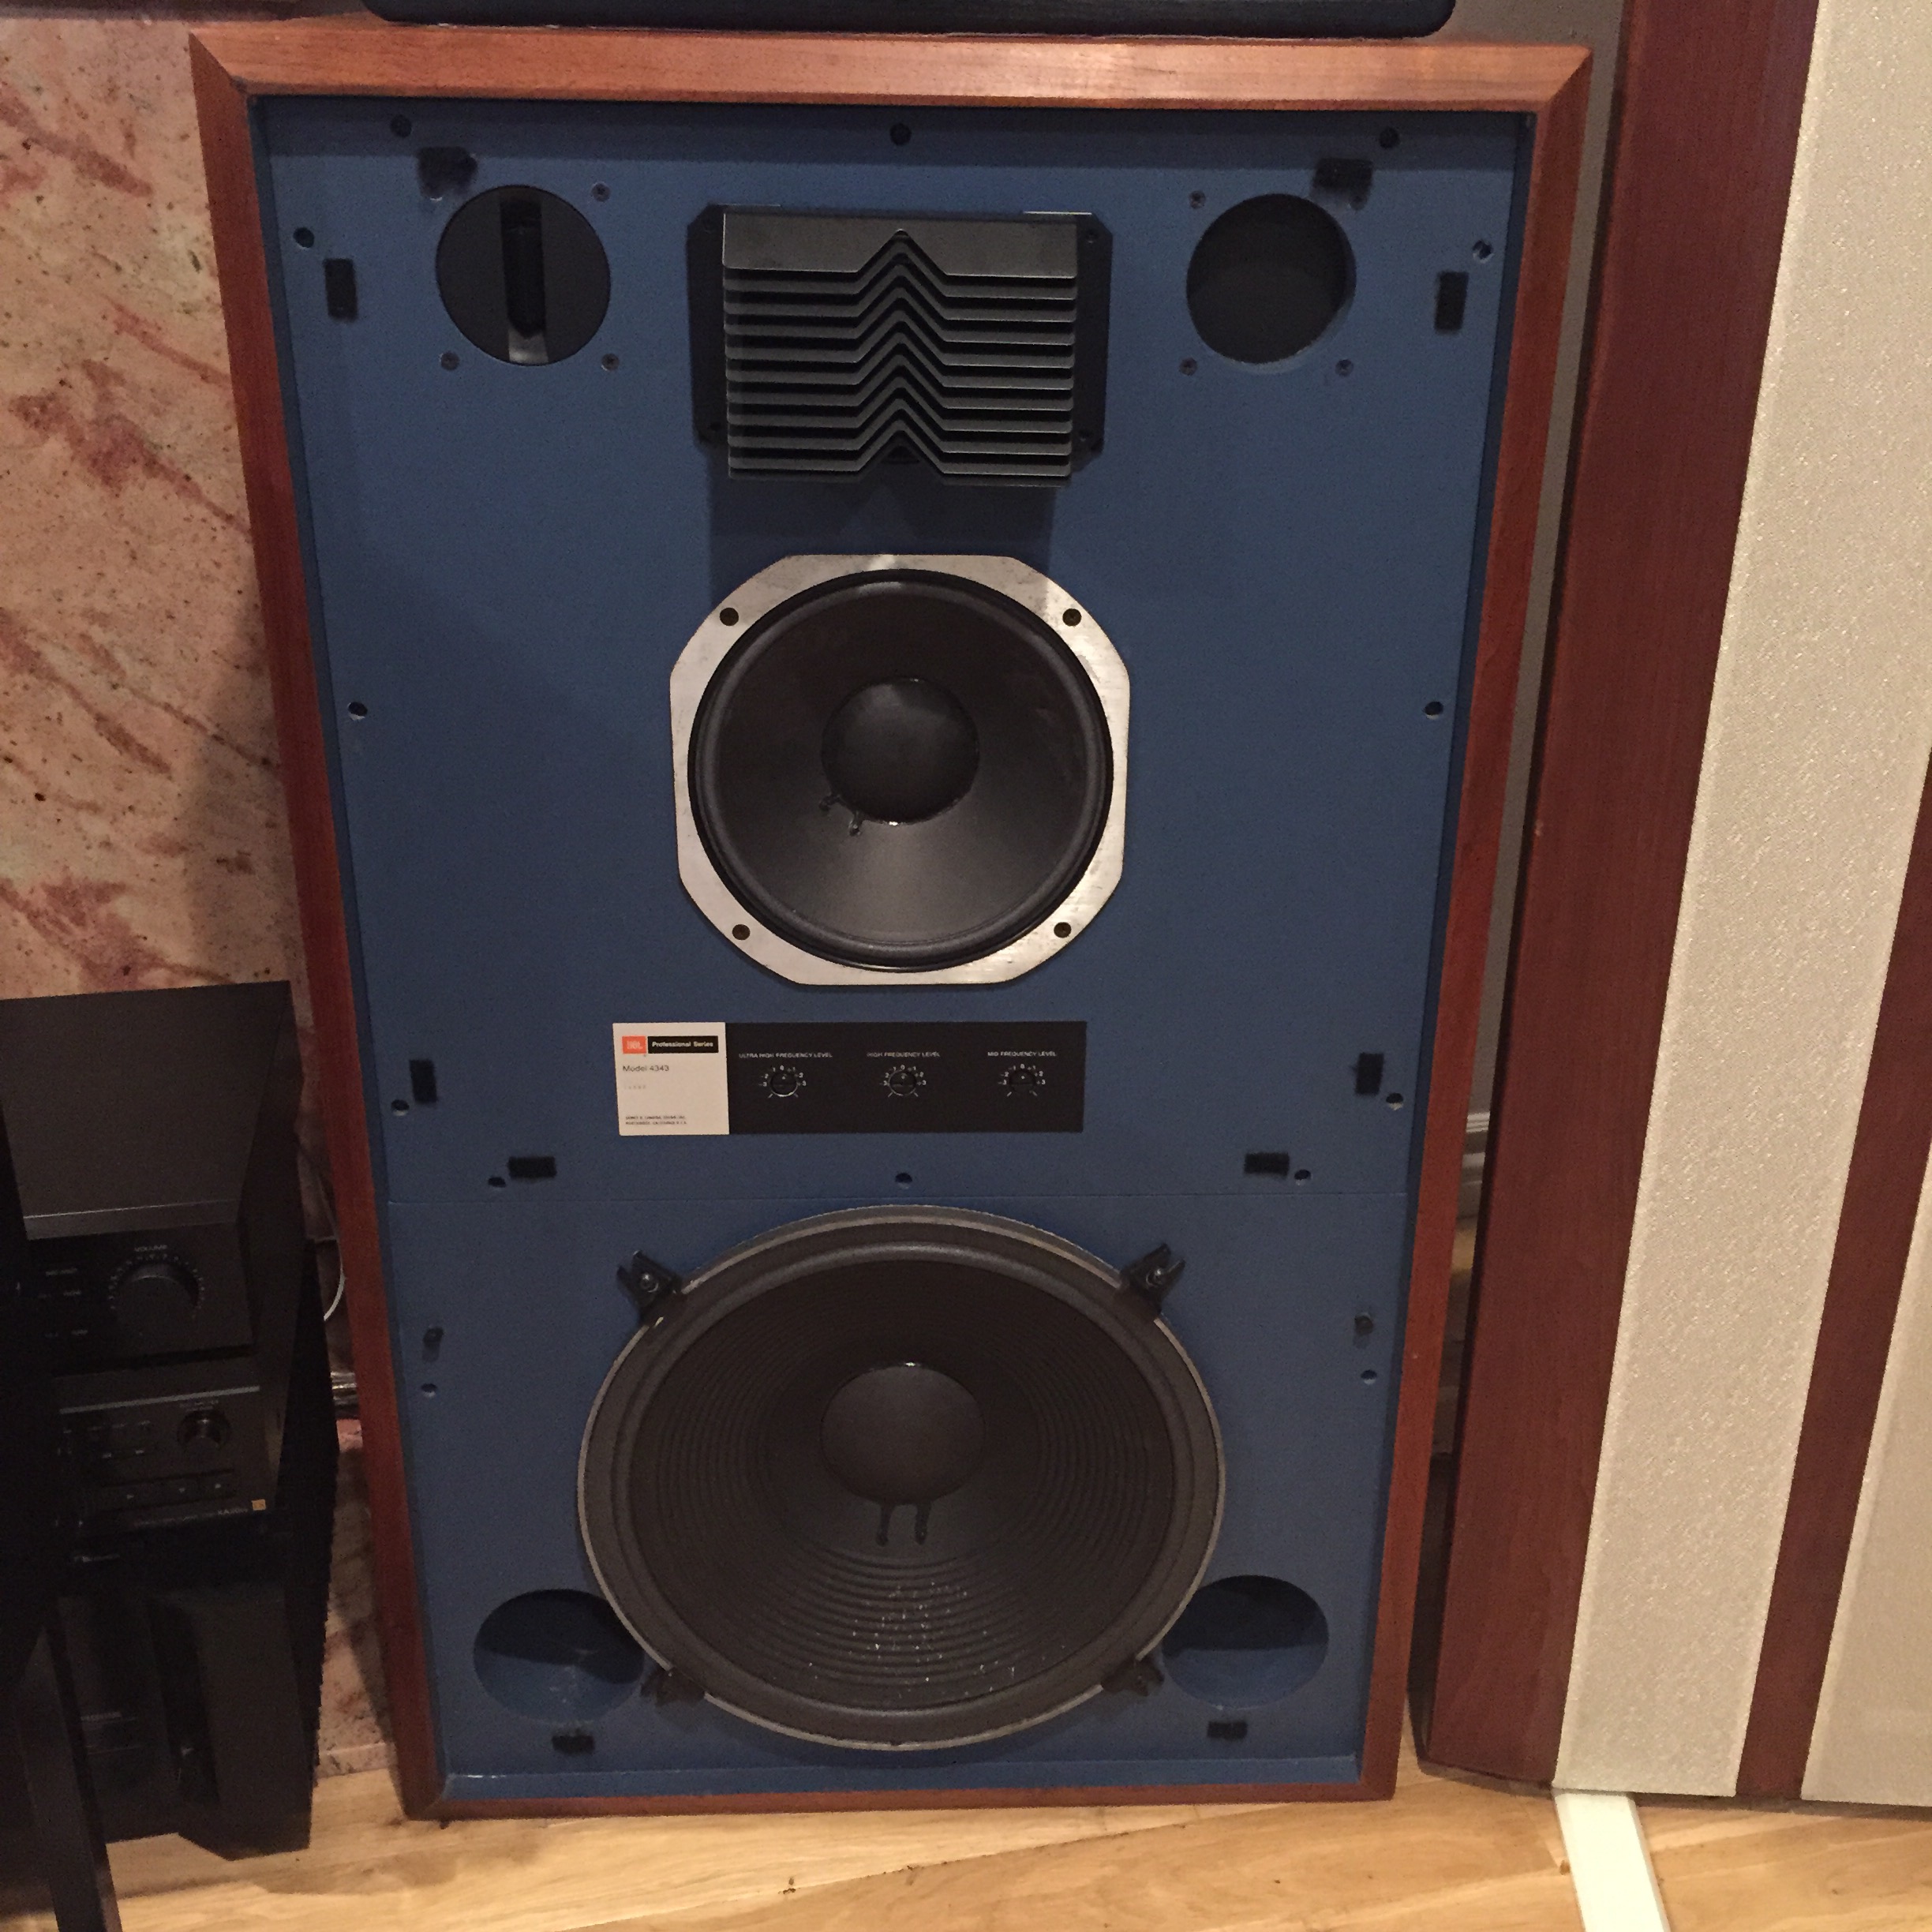 jbl audiophile speakers